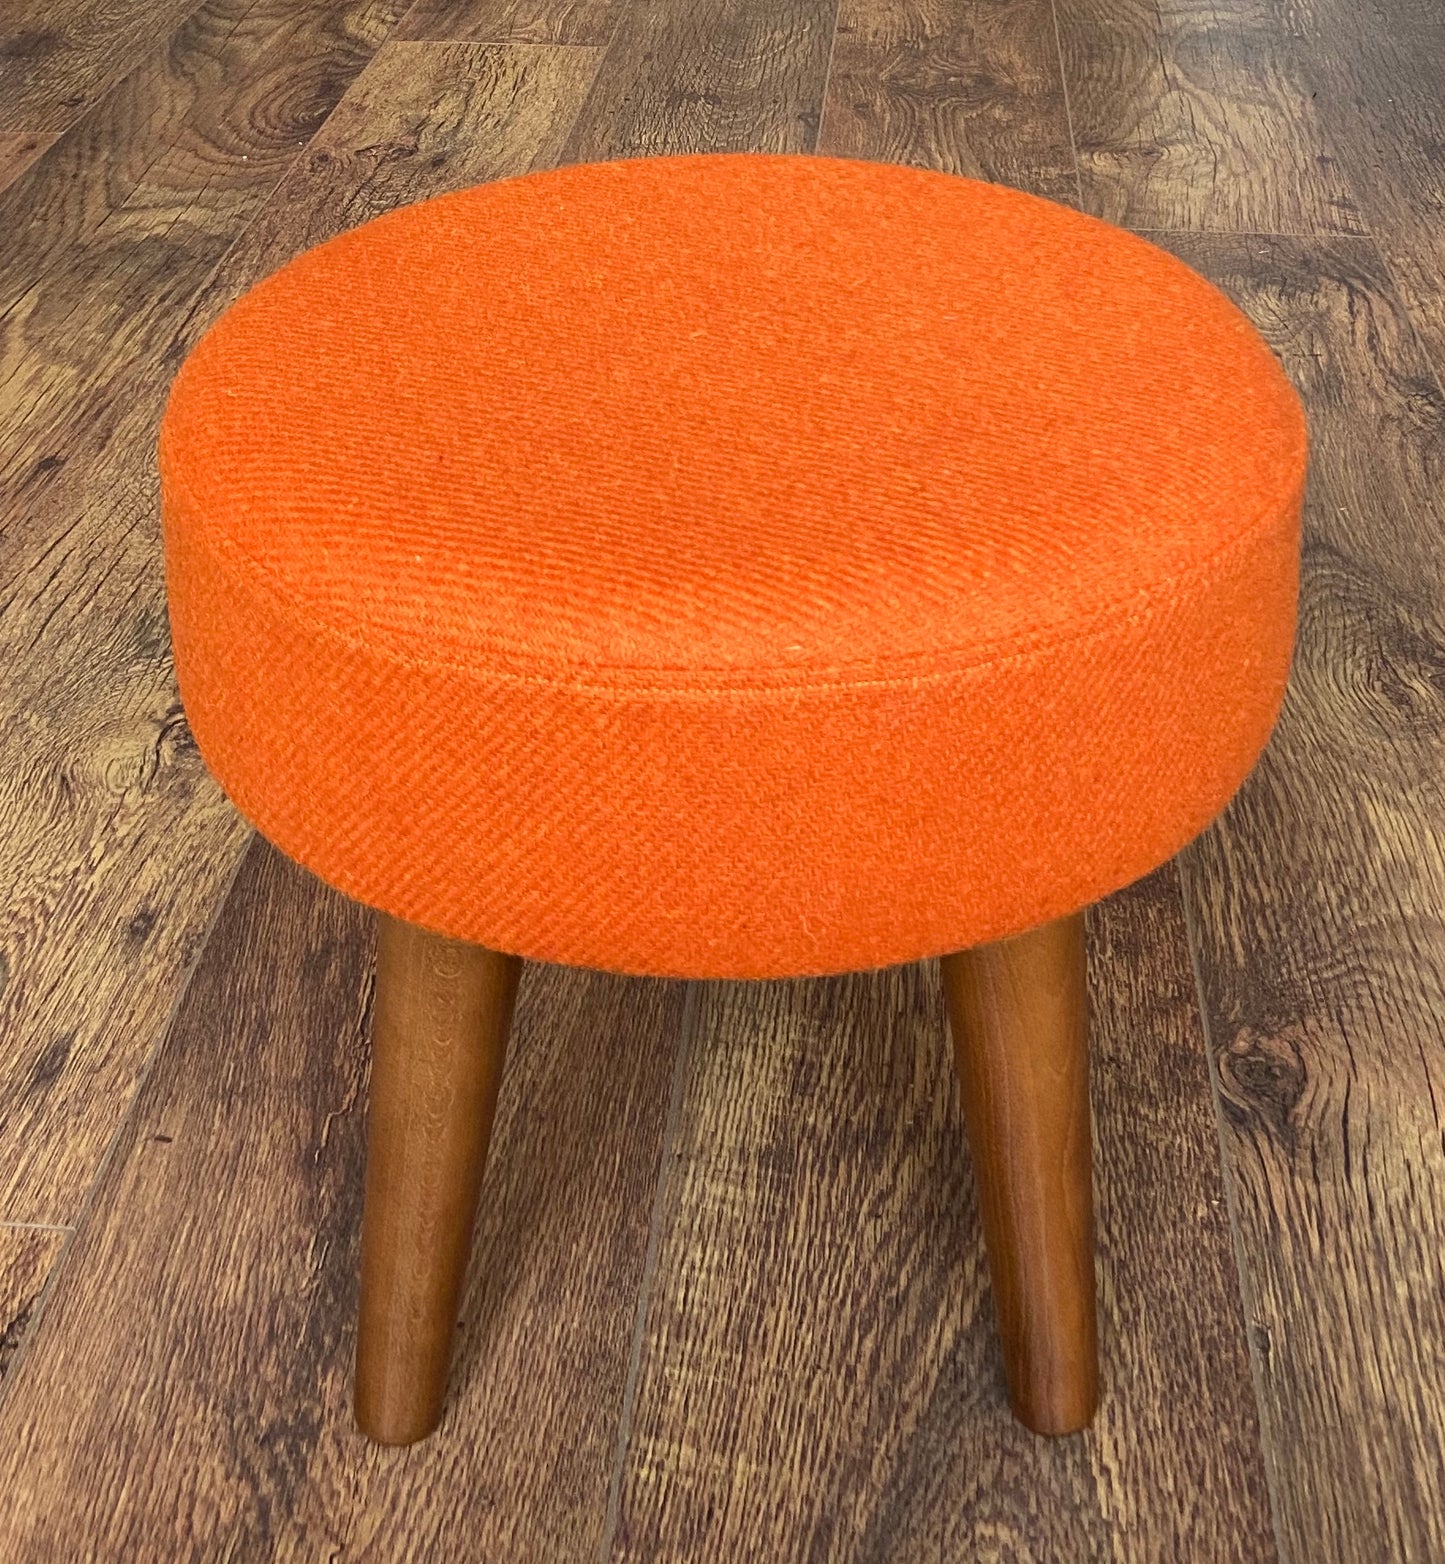 Orange Harris Tweed Footstool with Dark Varnished Wooden Legs